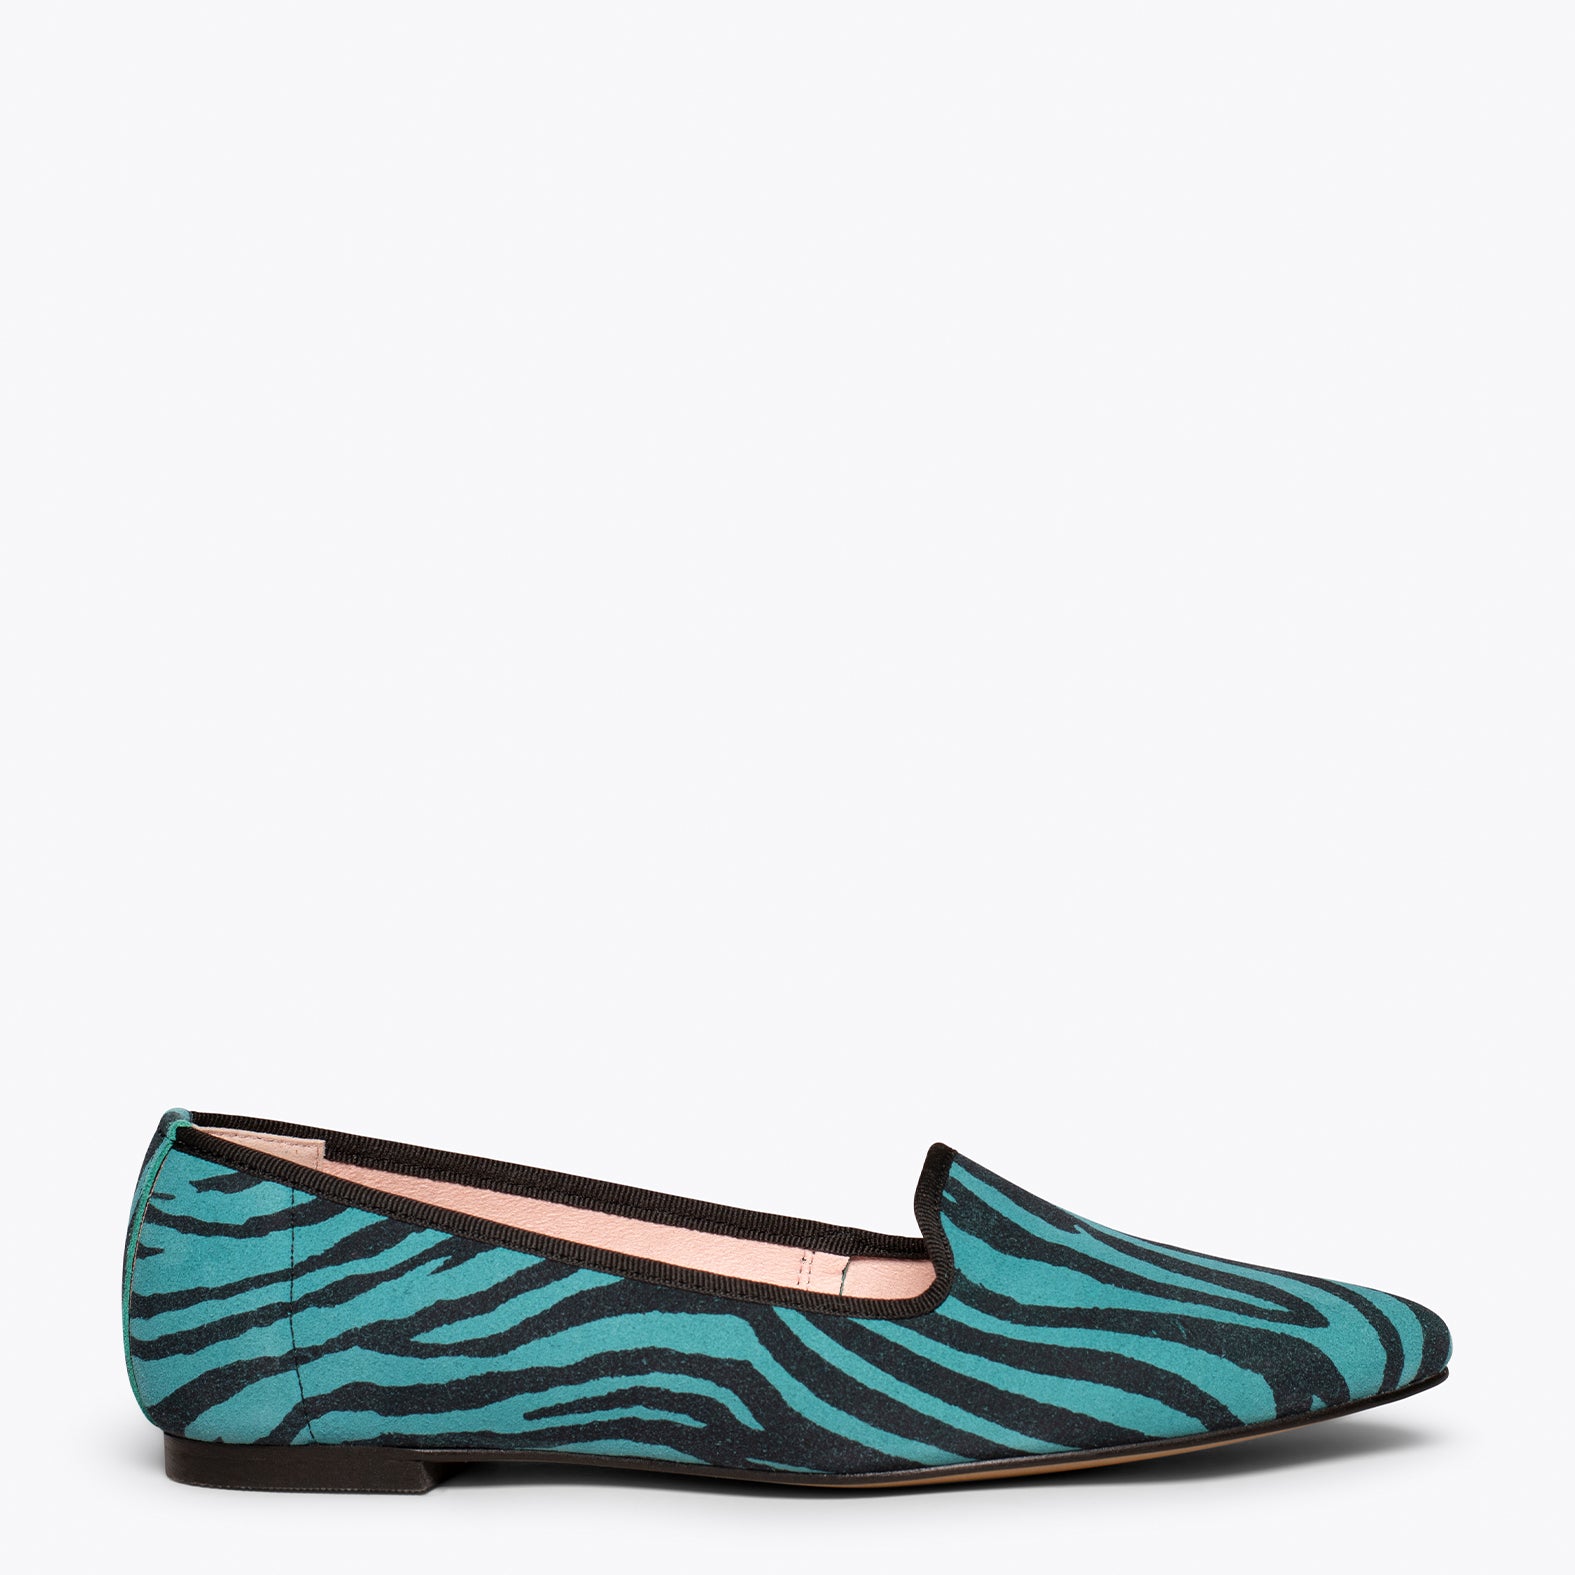 SLIPPER – BLUE animal print slipper